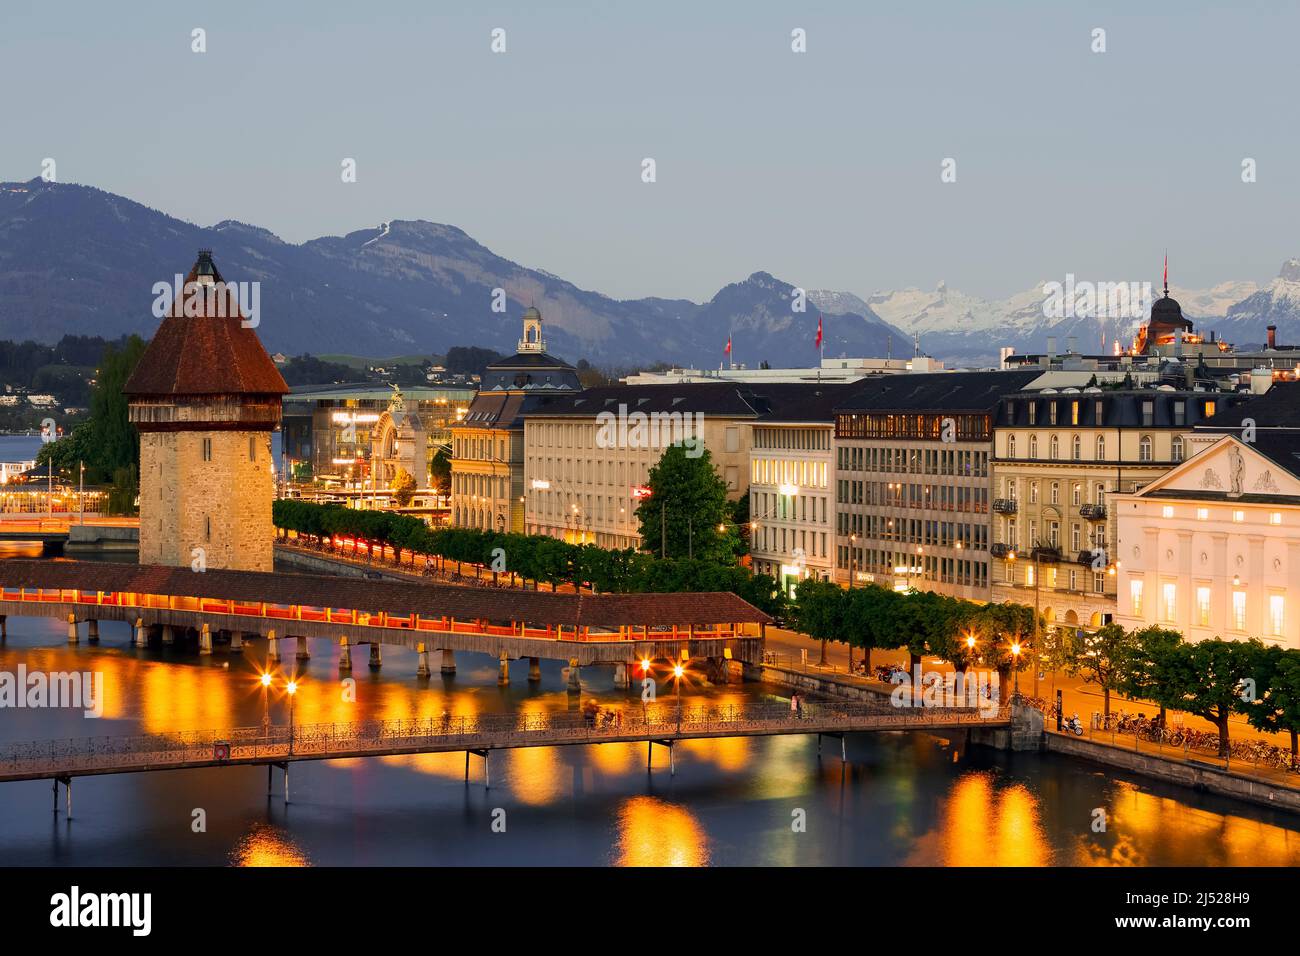 Lucerna, Suiza - 06 de mayo de 2016: Vista nocturna hacia la torre octogonal, el Wasserturm, que fue construido en el río Reuss y está justo al lado de t Foto de stock